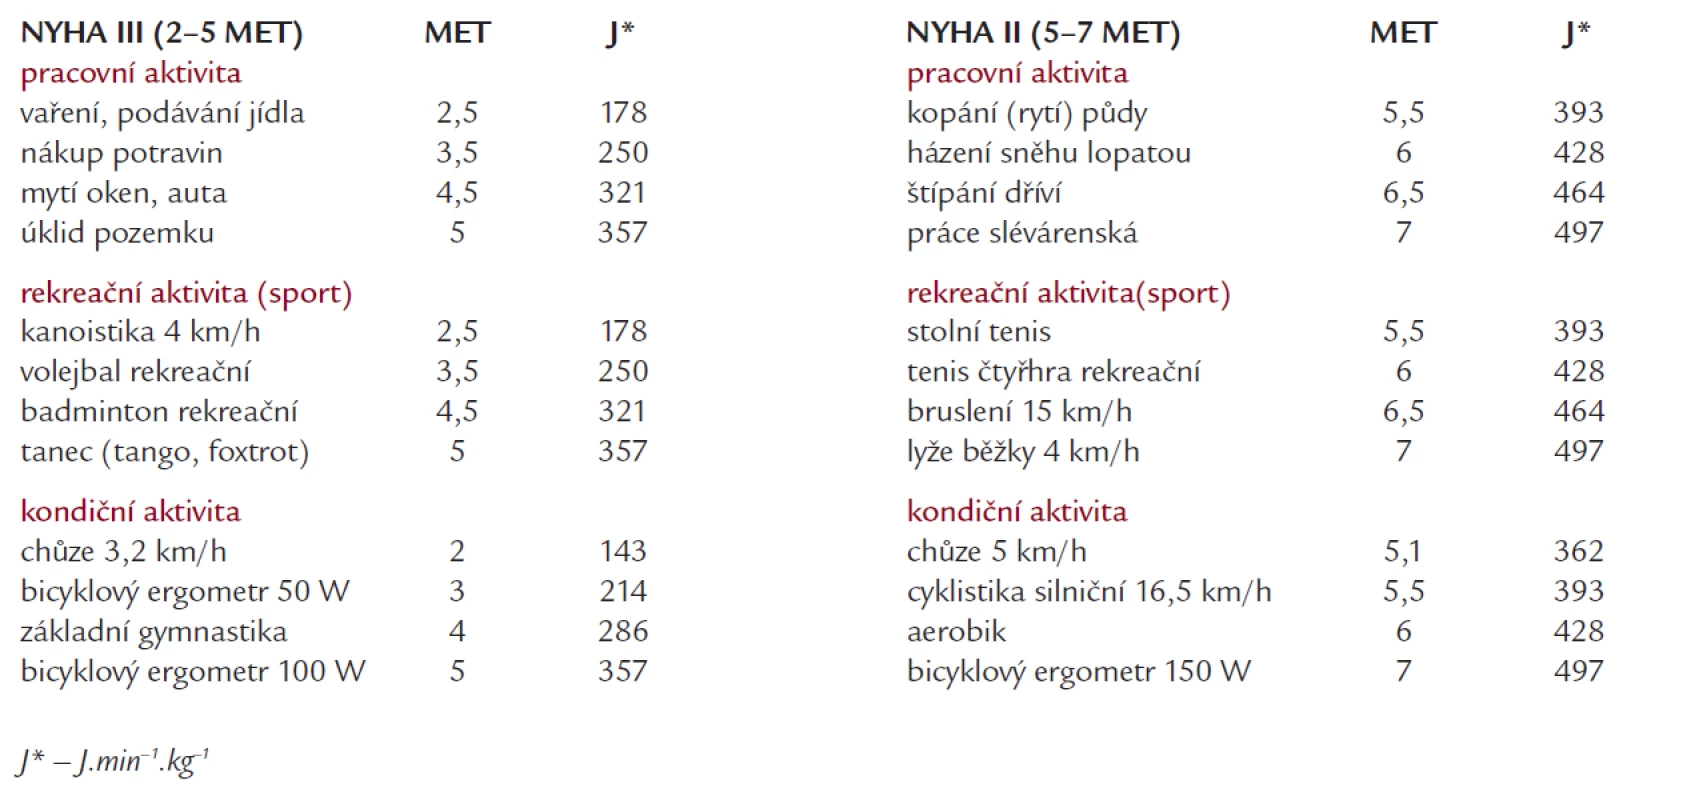 Druhy fyzické zátěže a jejich energetická náročnost skupin NYHA II a III (vybráno a upraveno podle [21–23]).